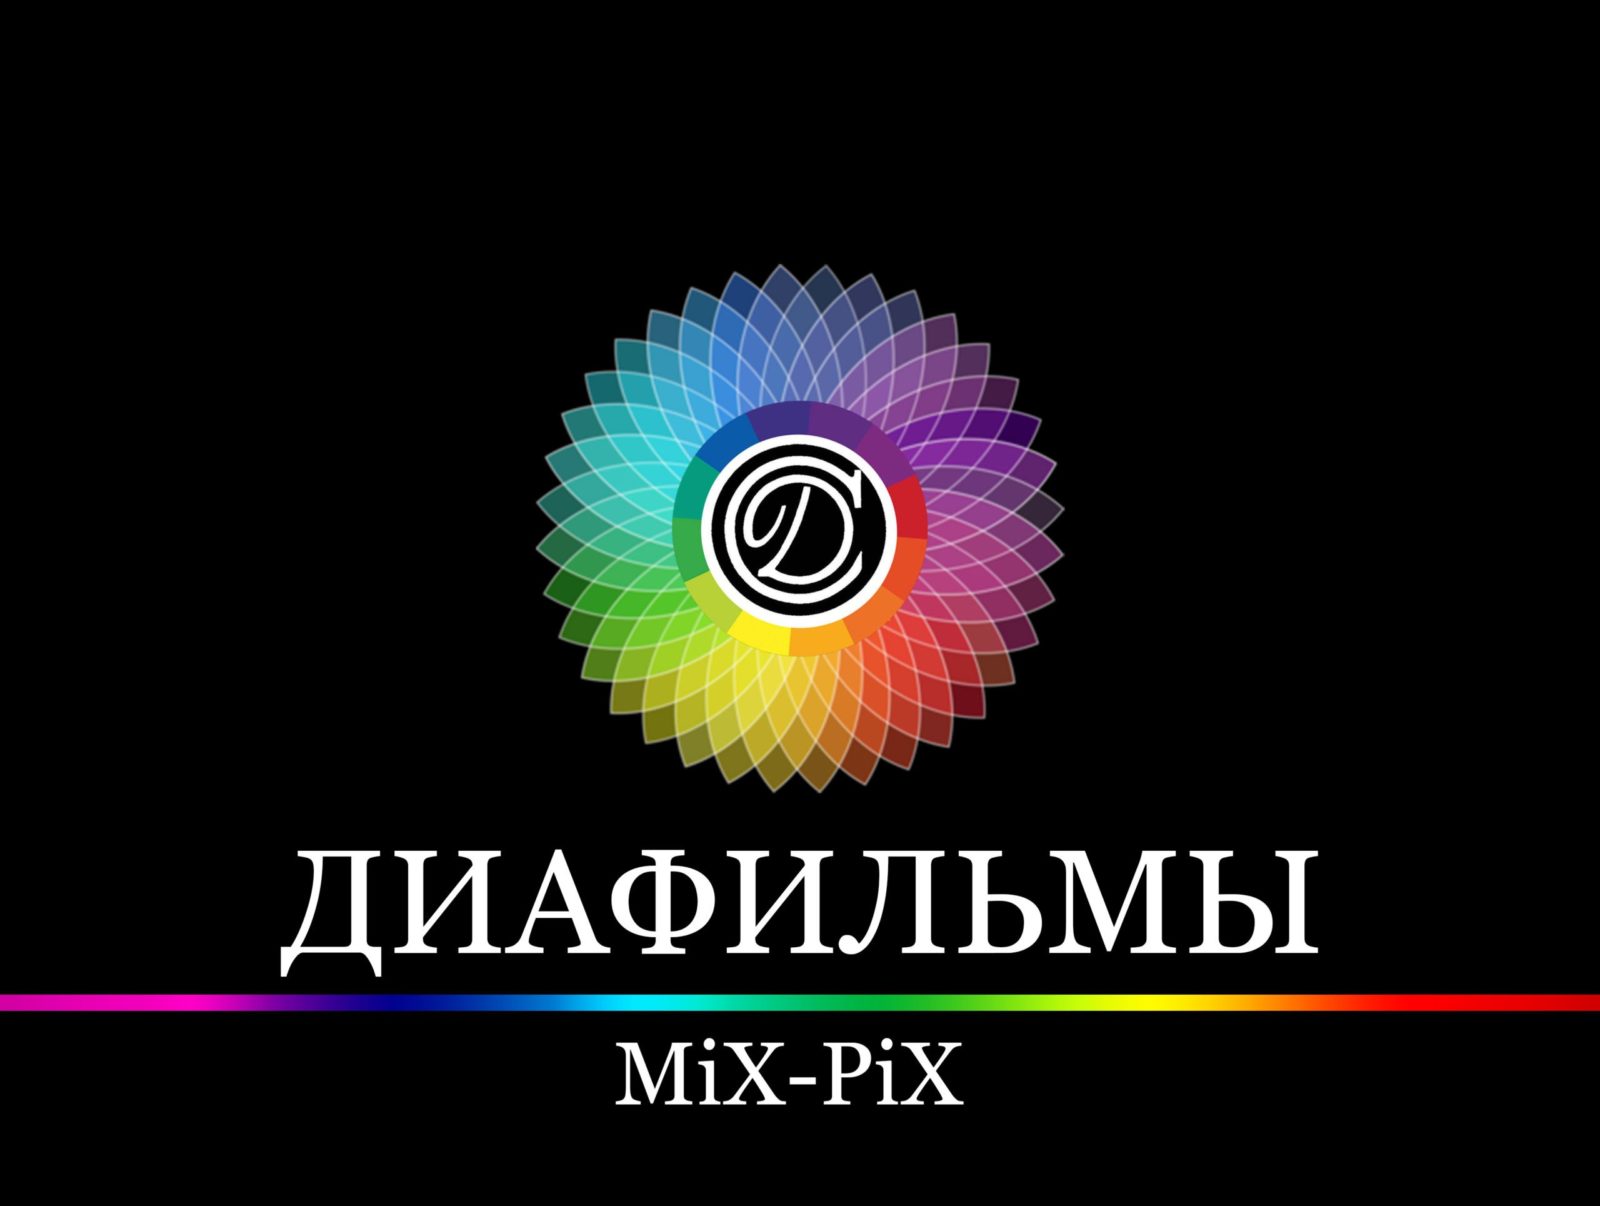 MiX-PiX